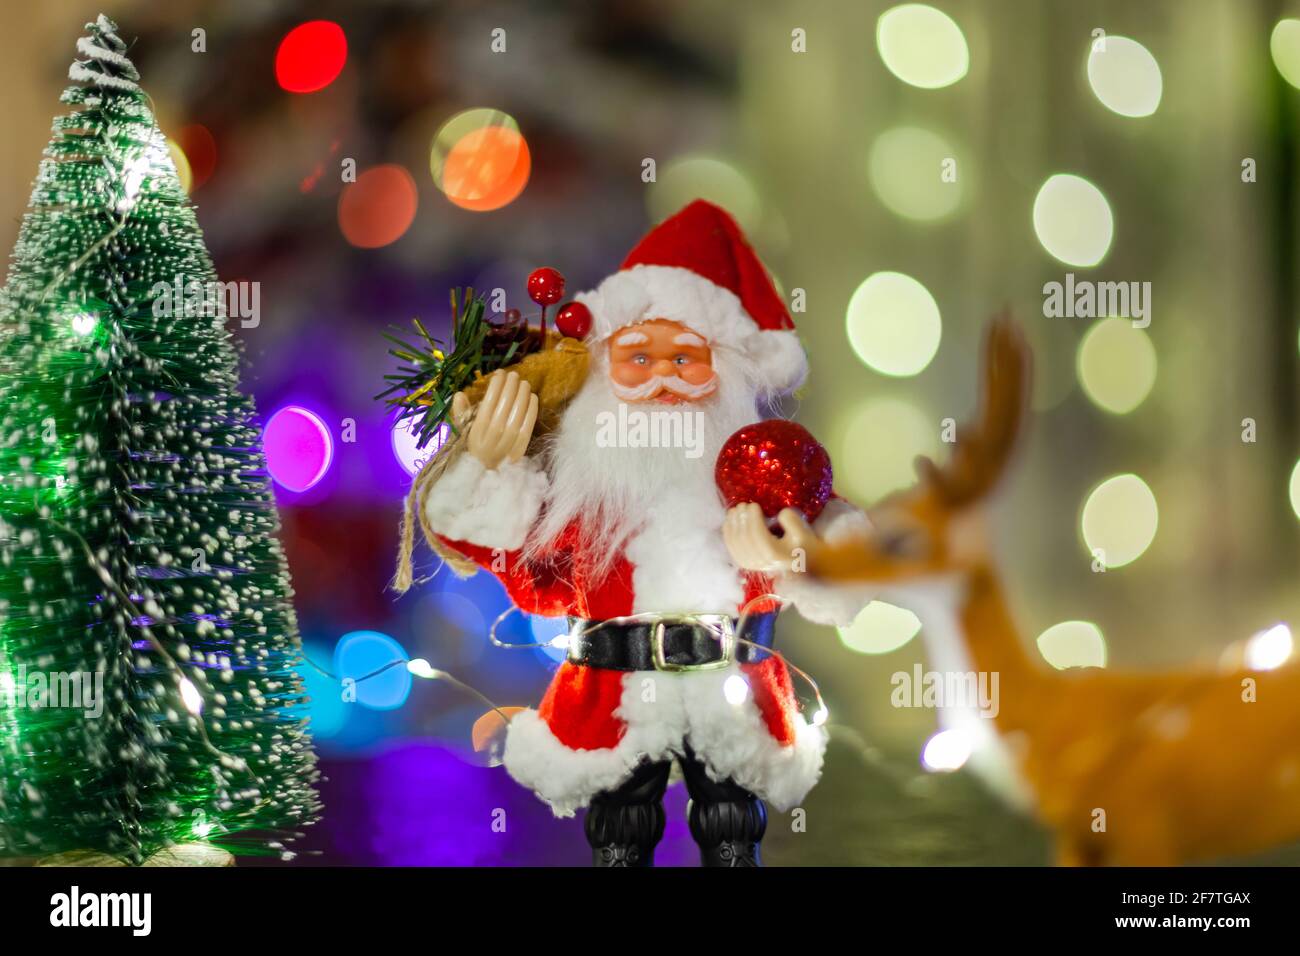 Jouet Père Noël sur fond de guirlandes lumineuses Banque D'Images